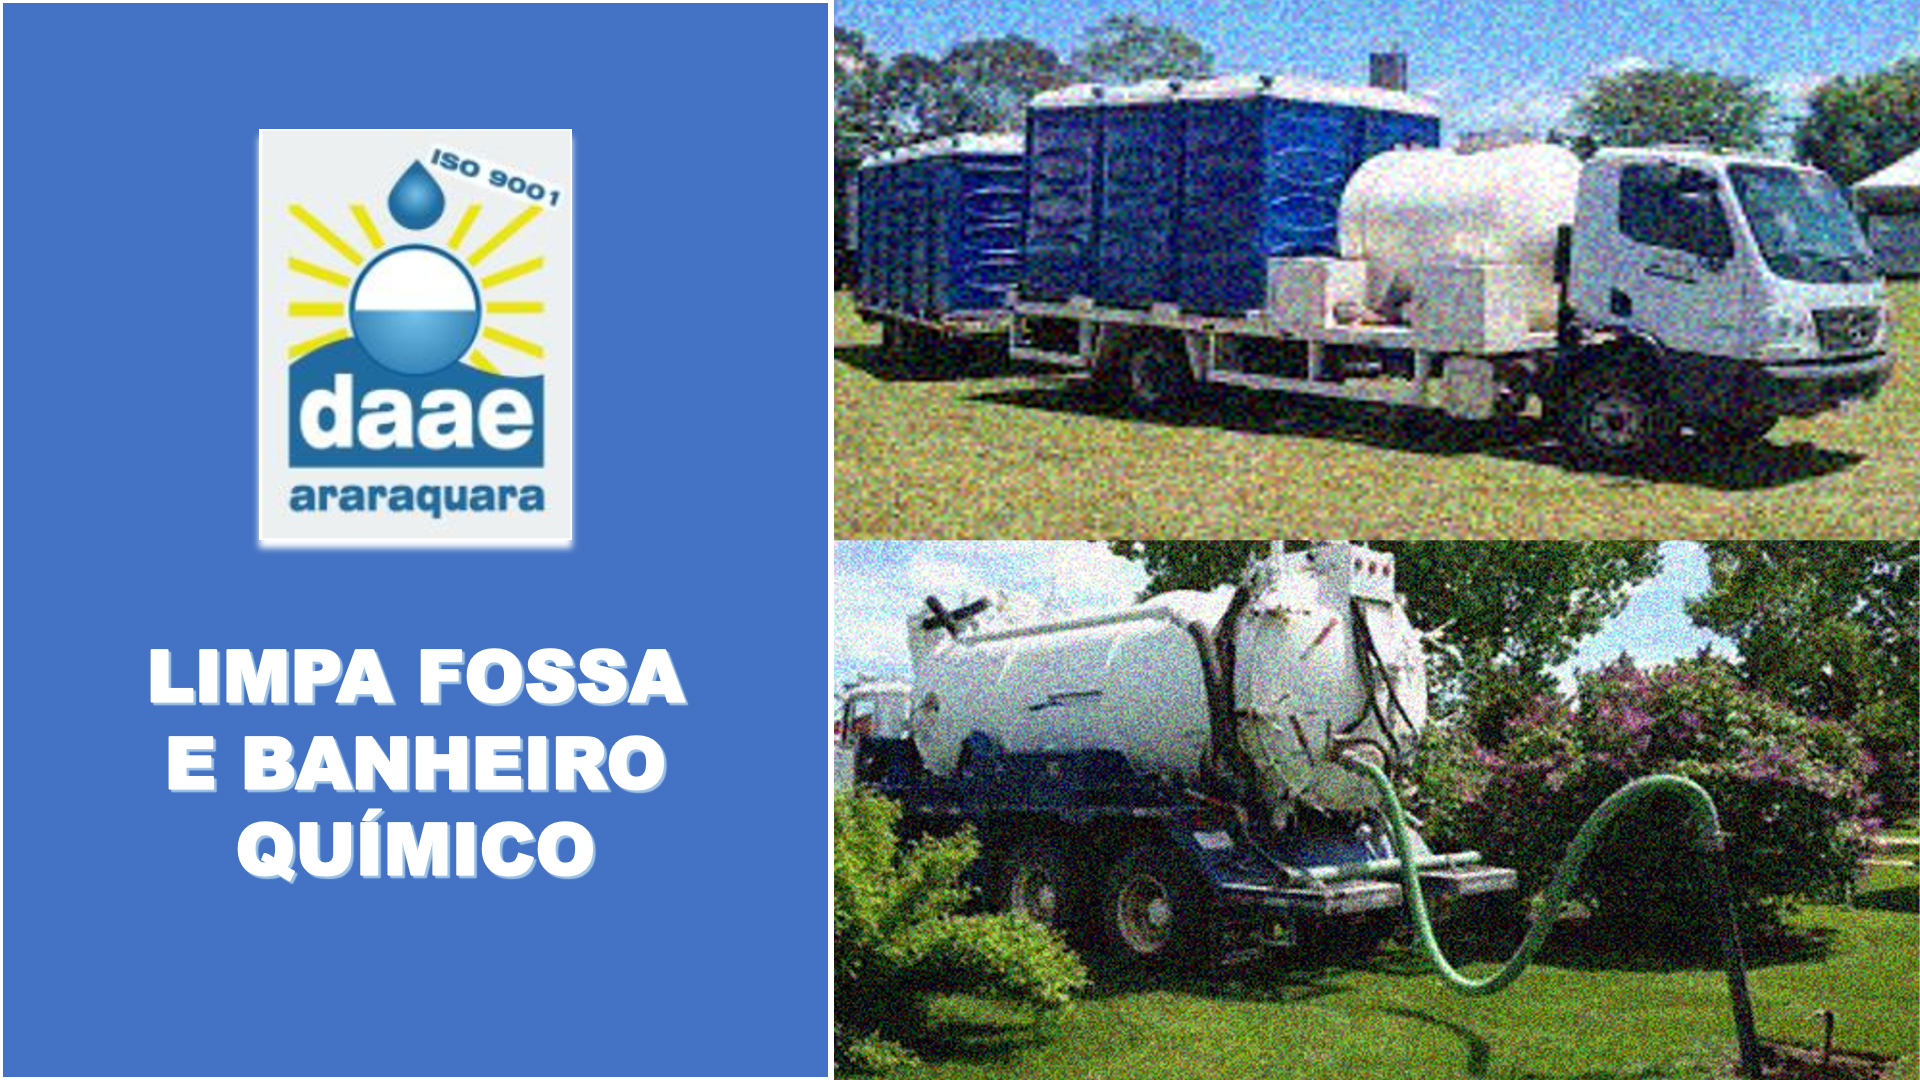 Limpa Fossa E Banheiro Químico Daae Araraquara